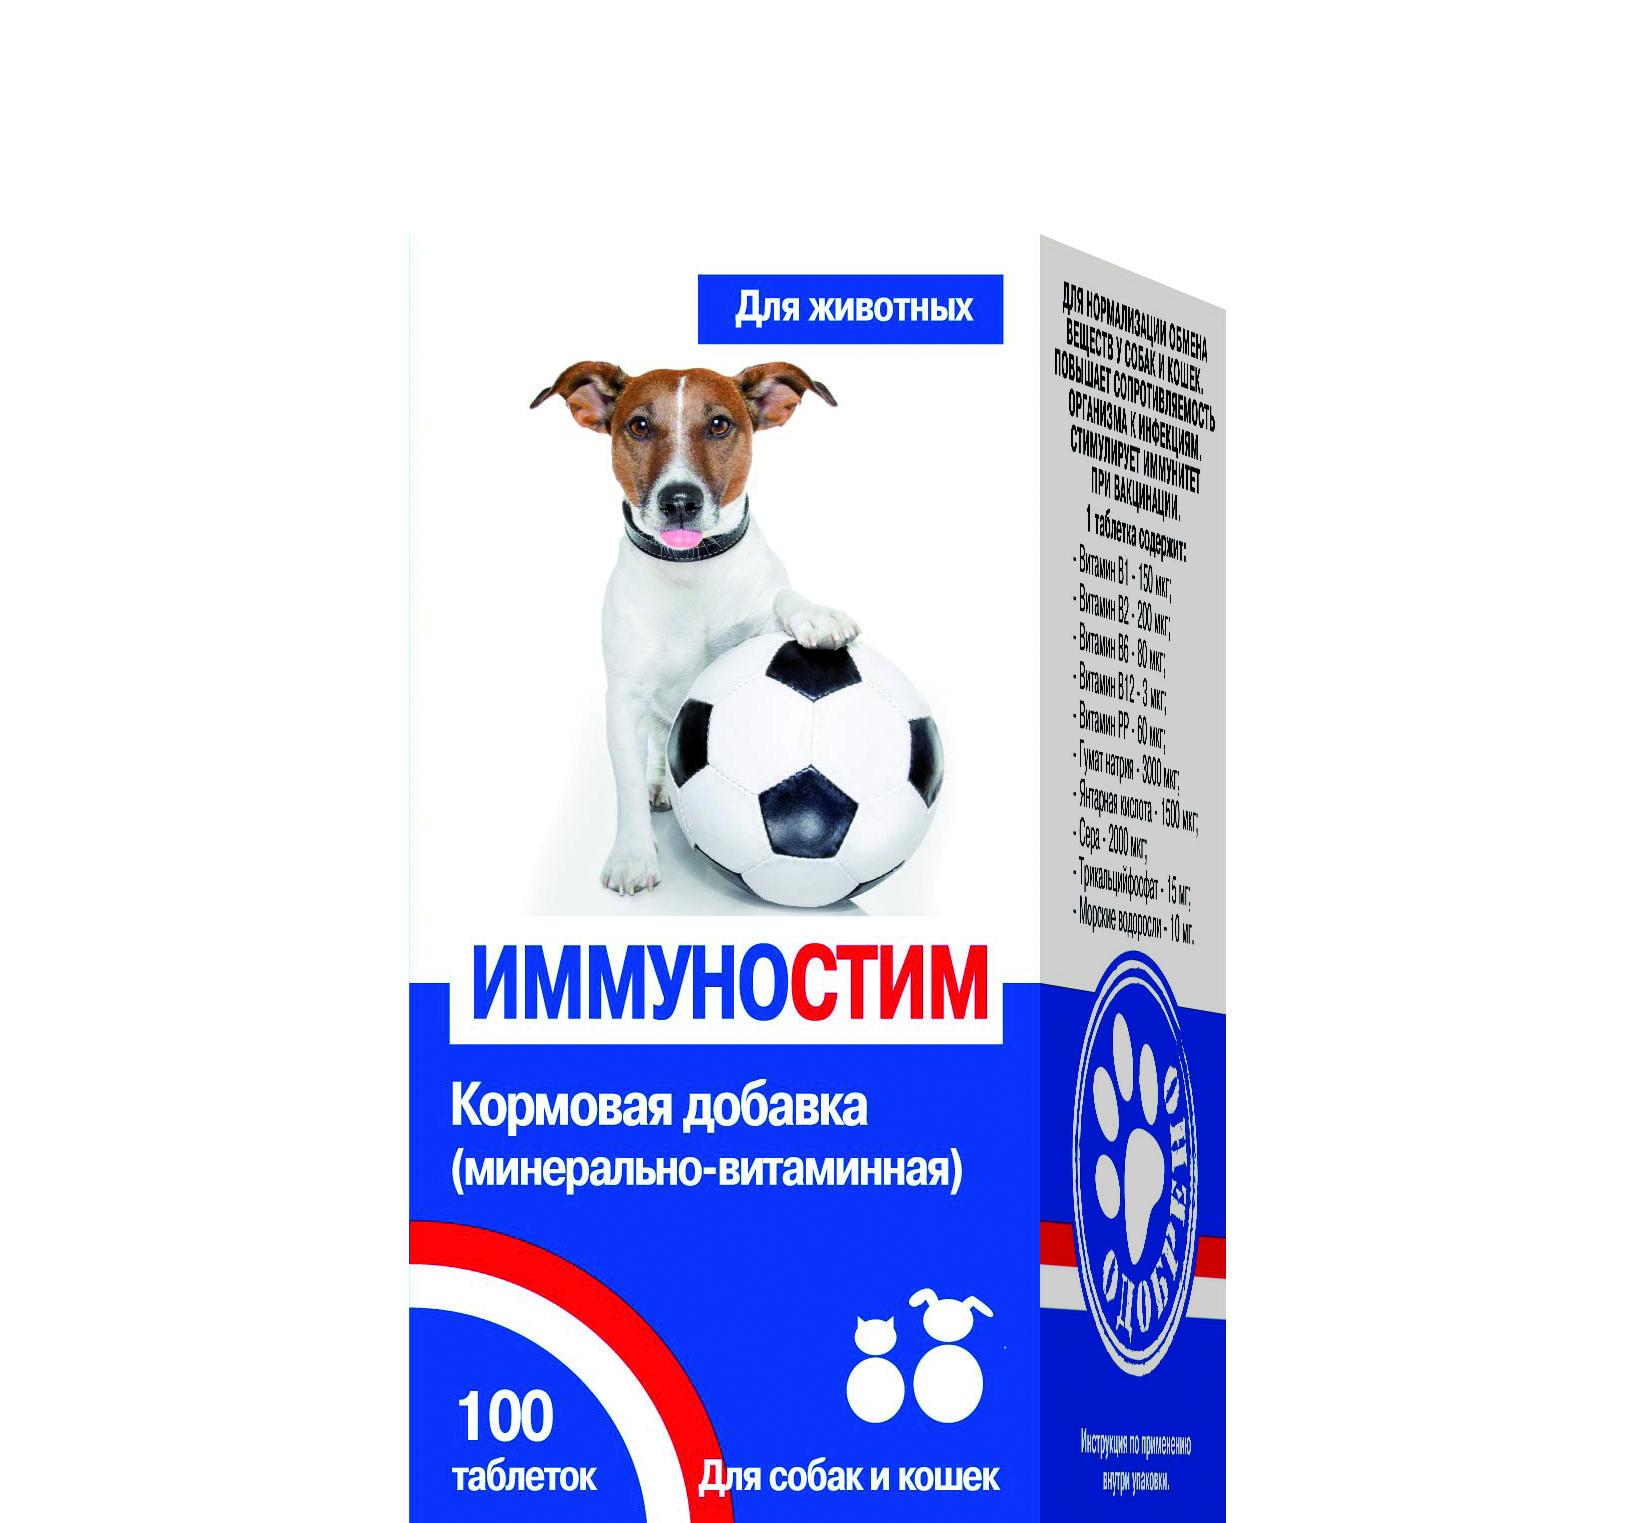 Квант МКБ Иммуностим Таблетки для нормализации обмена веществ у собак и кошек, 100 таблеток 